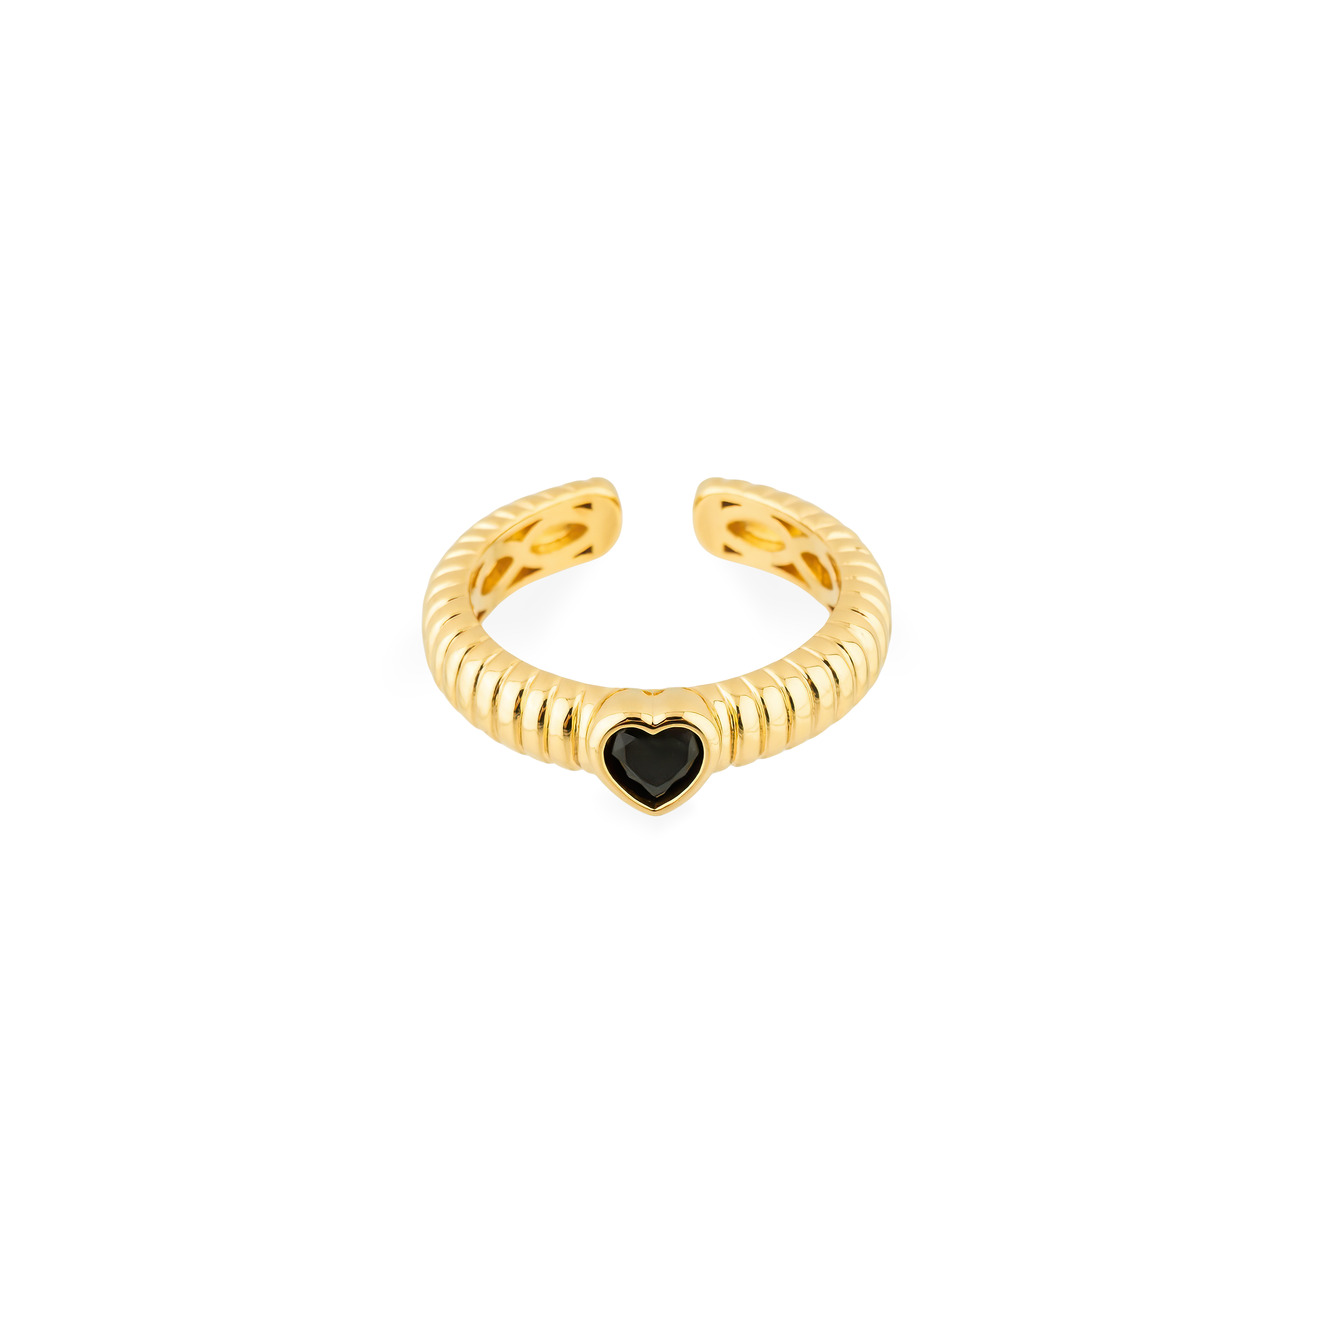 Herald Percy Золотистое фигурное кольцо с черным сердцем herald percy серебристое фигурное кольцо с зеленым сердцем